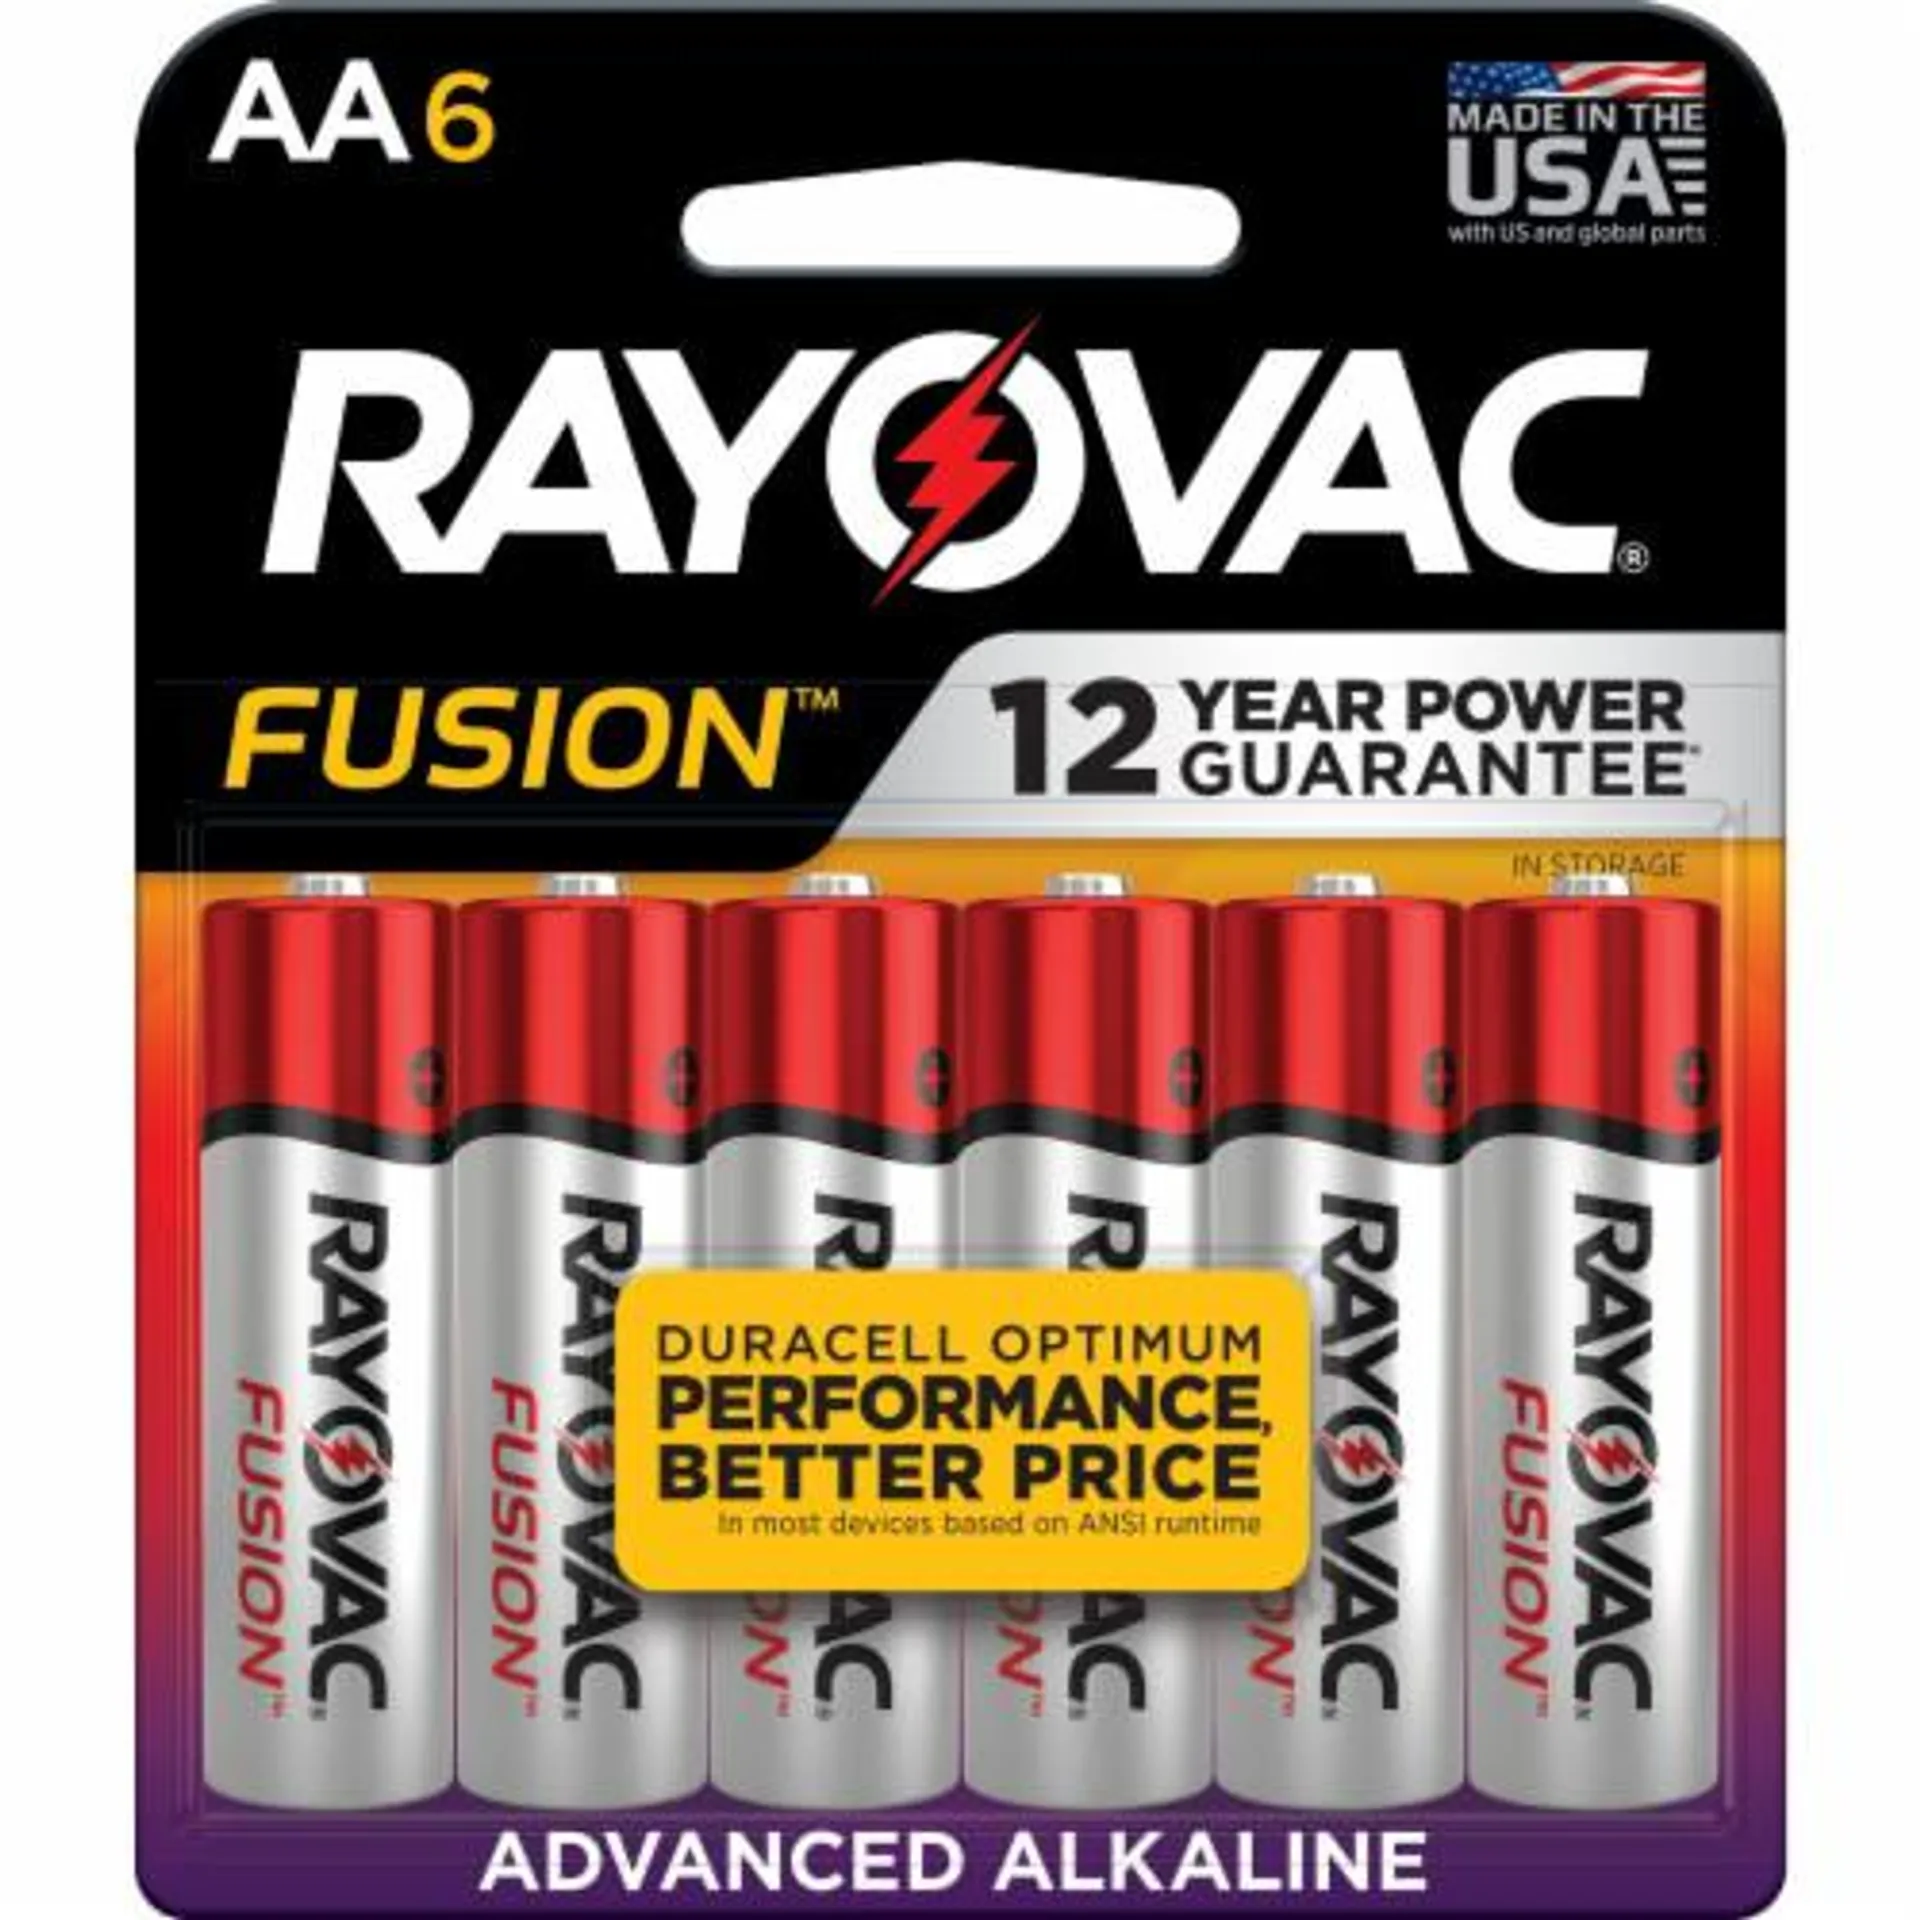 Rayovac® Fusion™ AA Alkaline Batteries